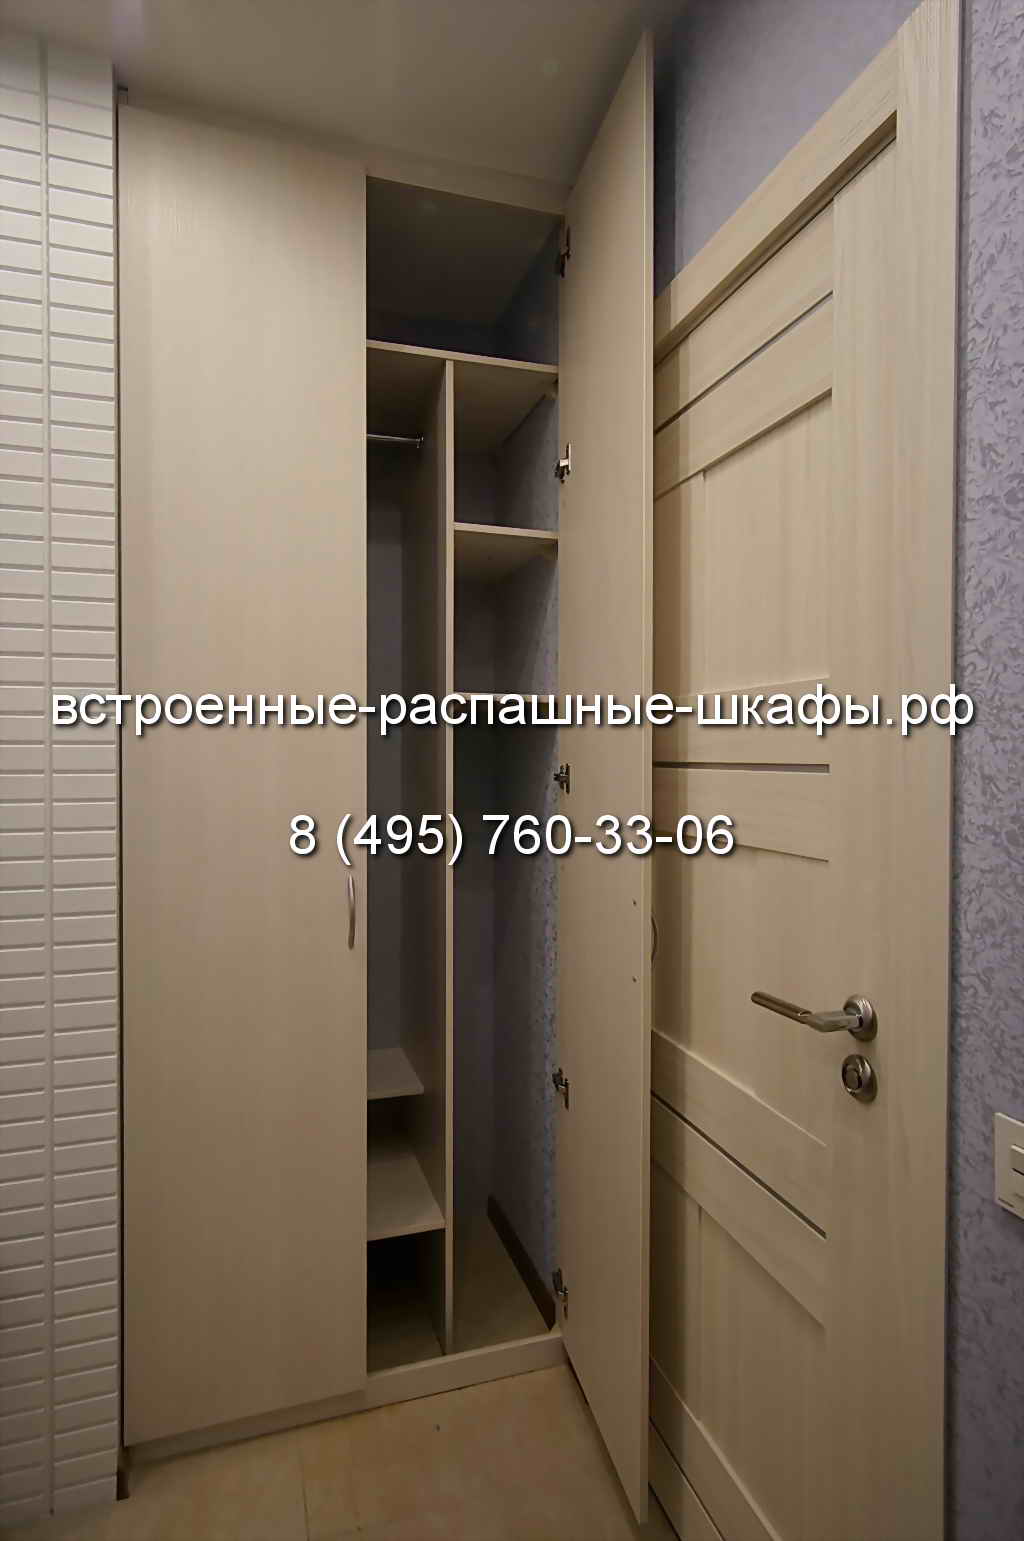 Шкаф встроенный в нишу с распашными дверями